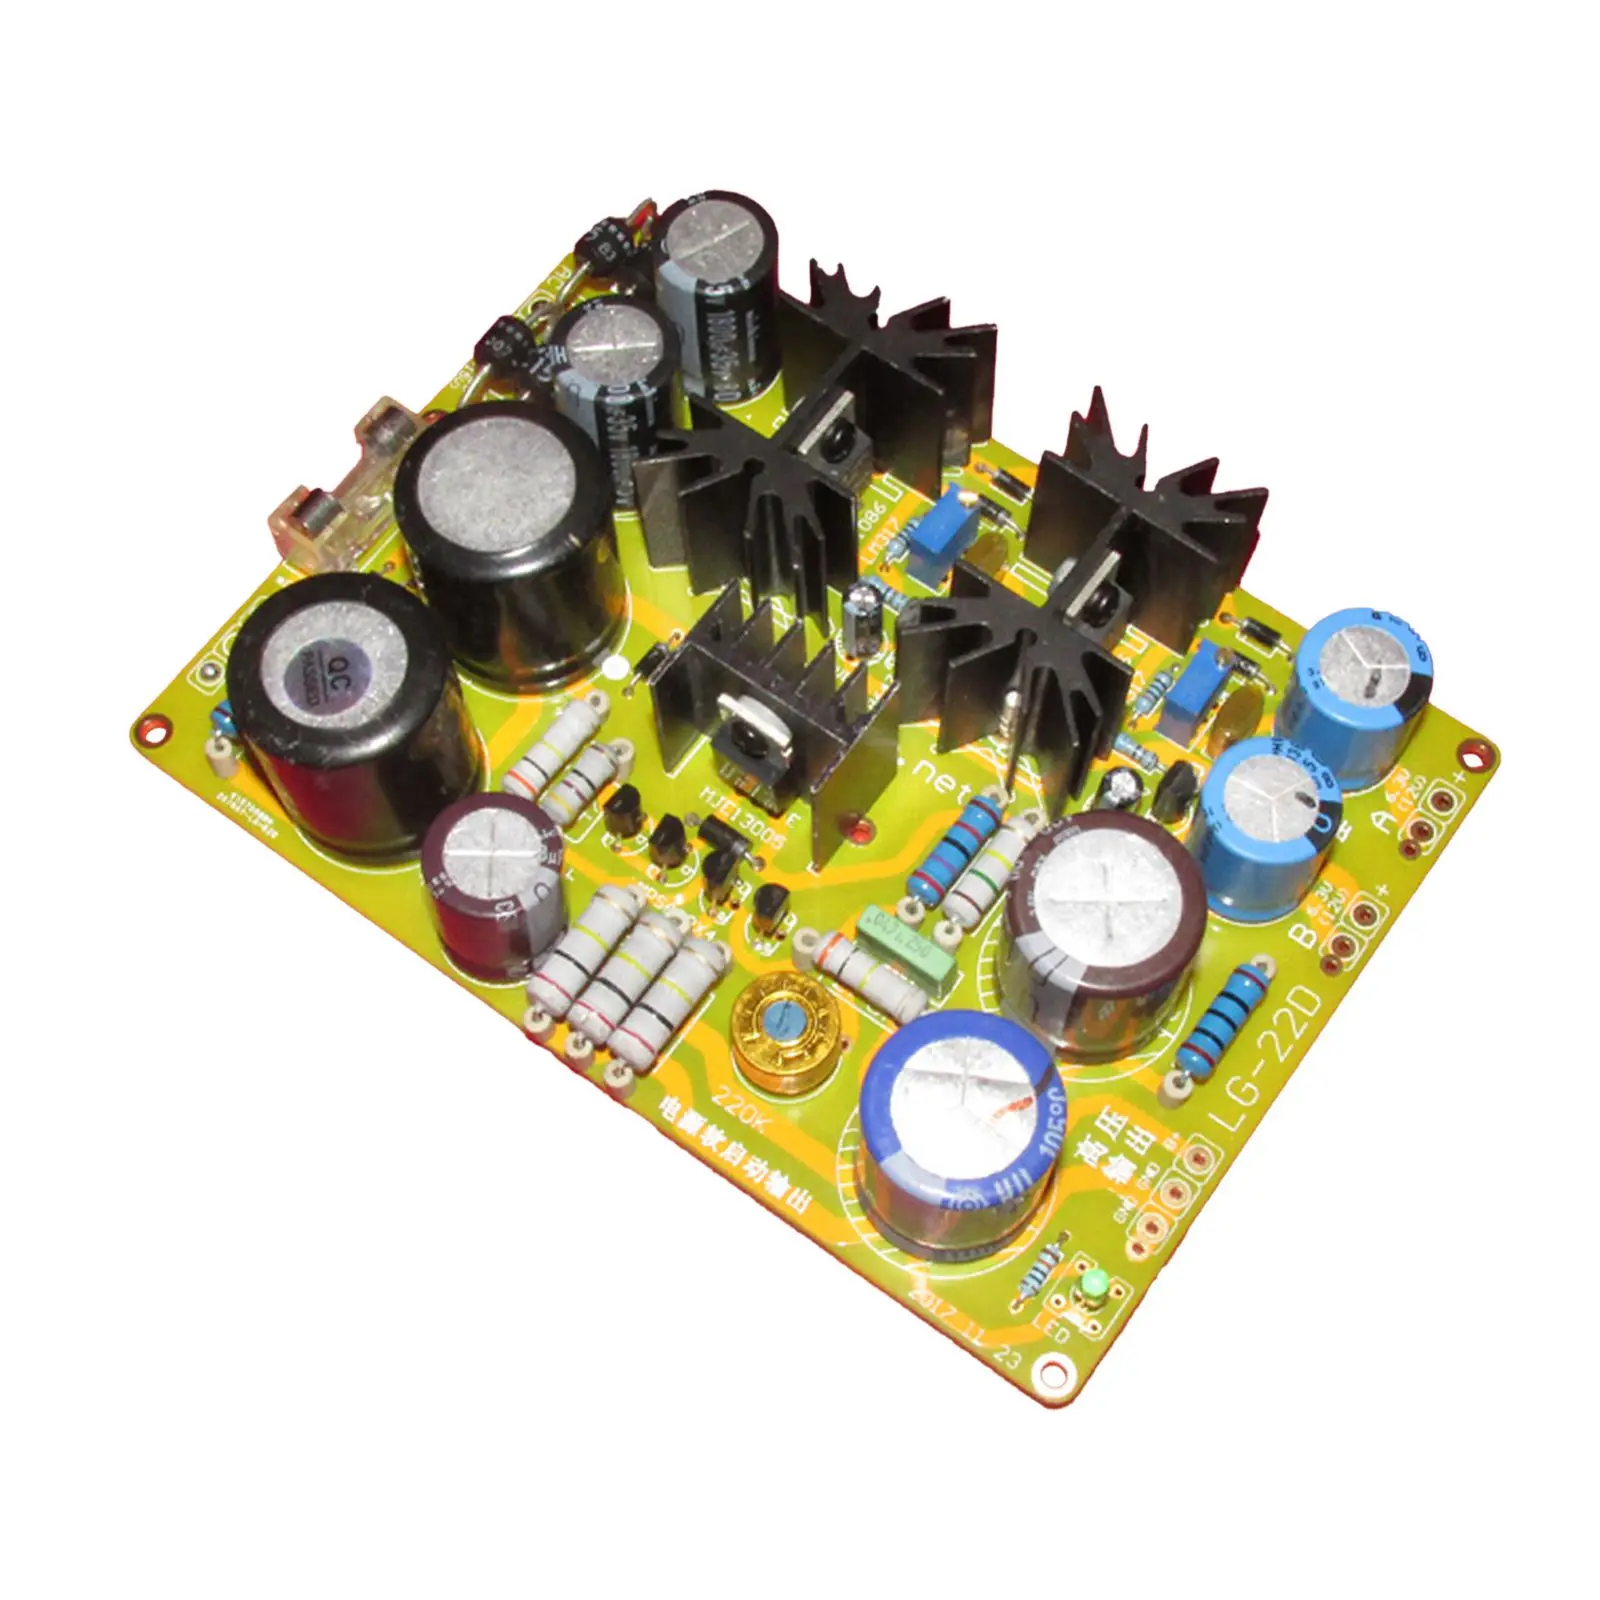 Универсальная плата регулятора высокого напряжения LM317 с 4 электронными вакуумными лампами PAMP желтого цвета